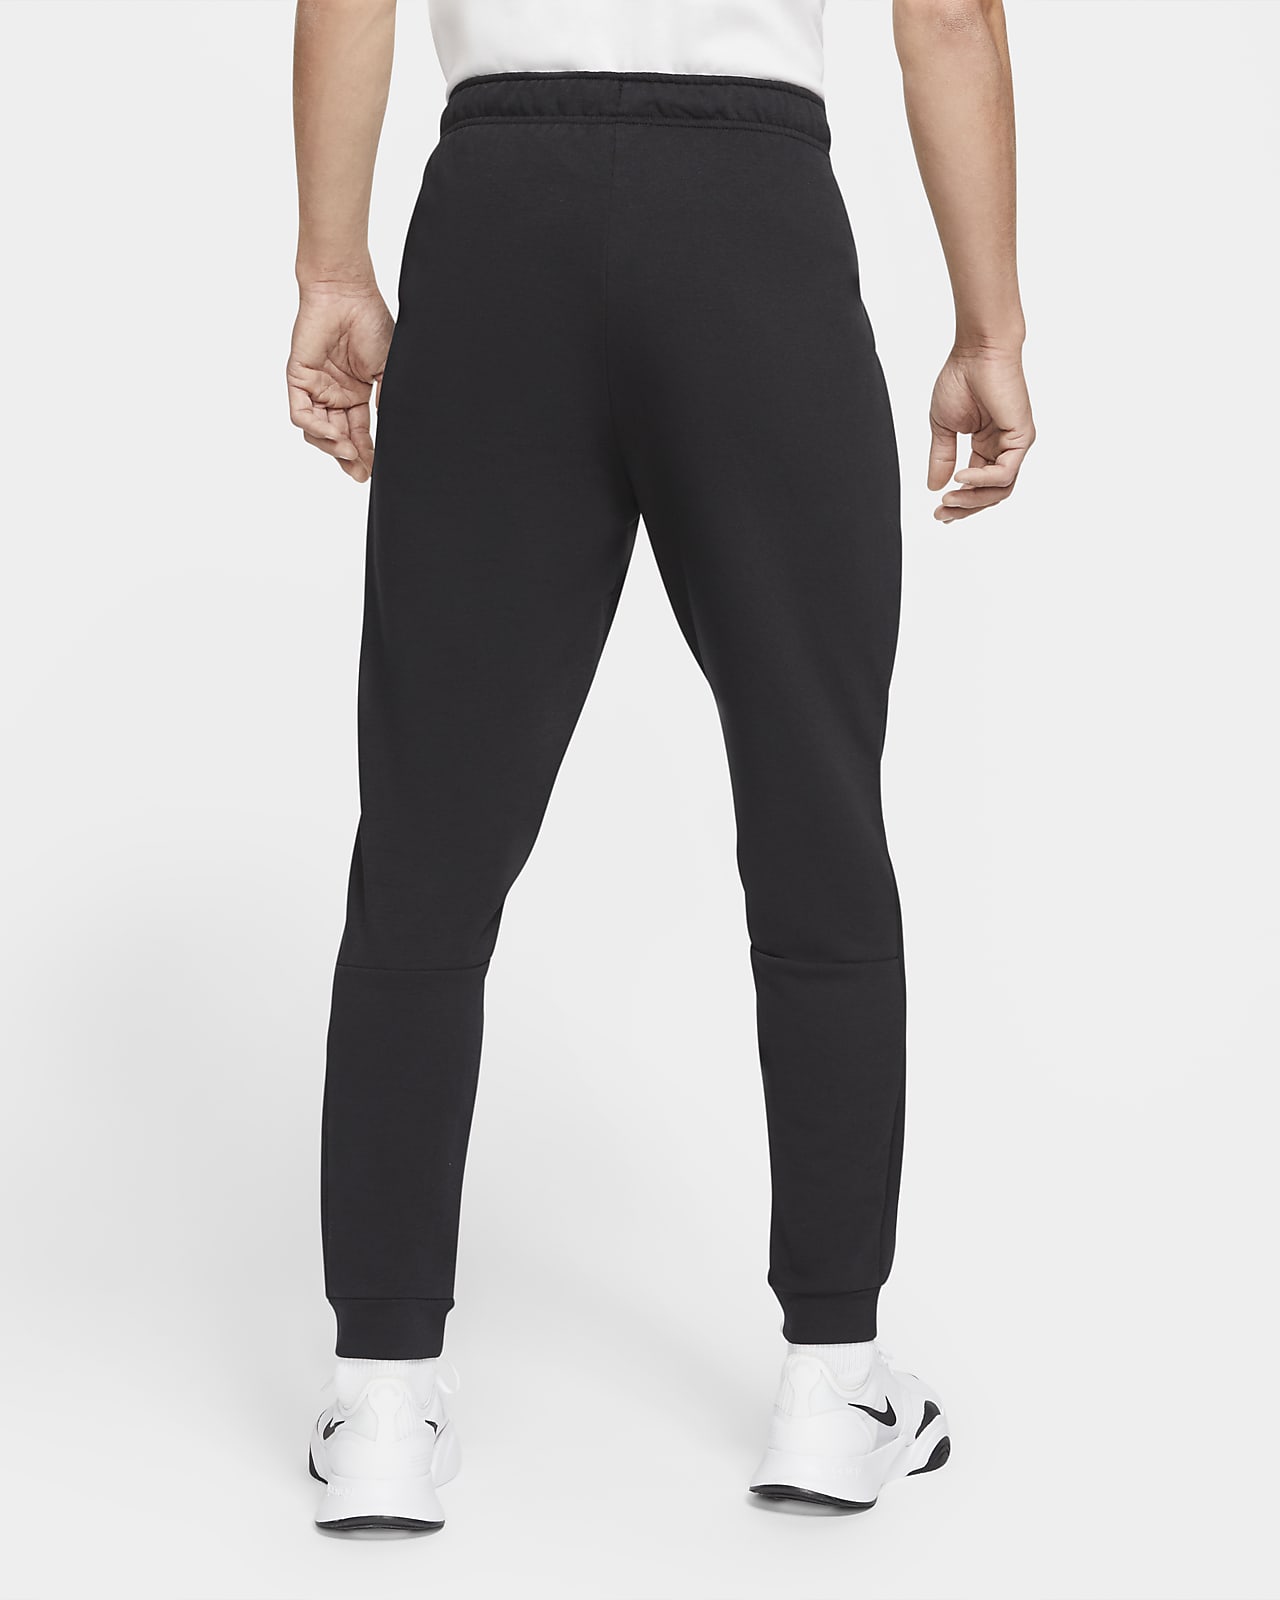 Pantalones para hombre Nike Yoga. Nike MX